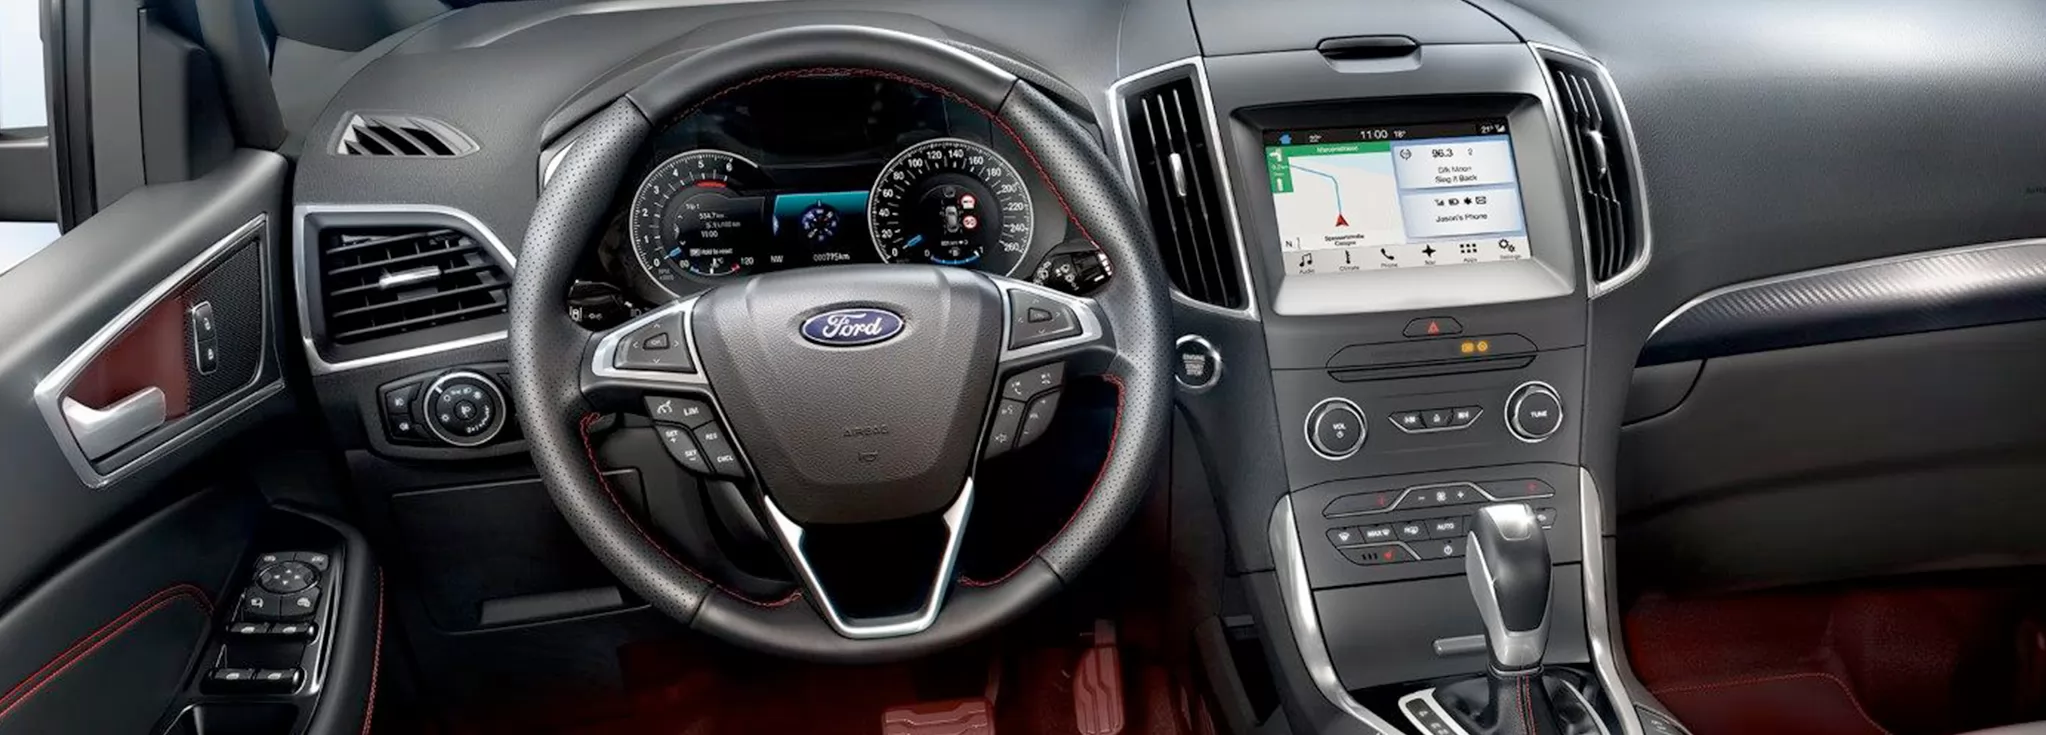 Interior del Ford S-Max